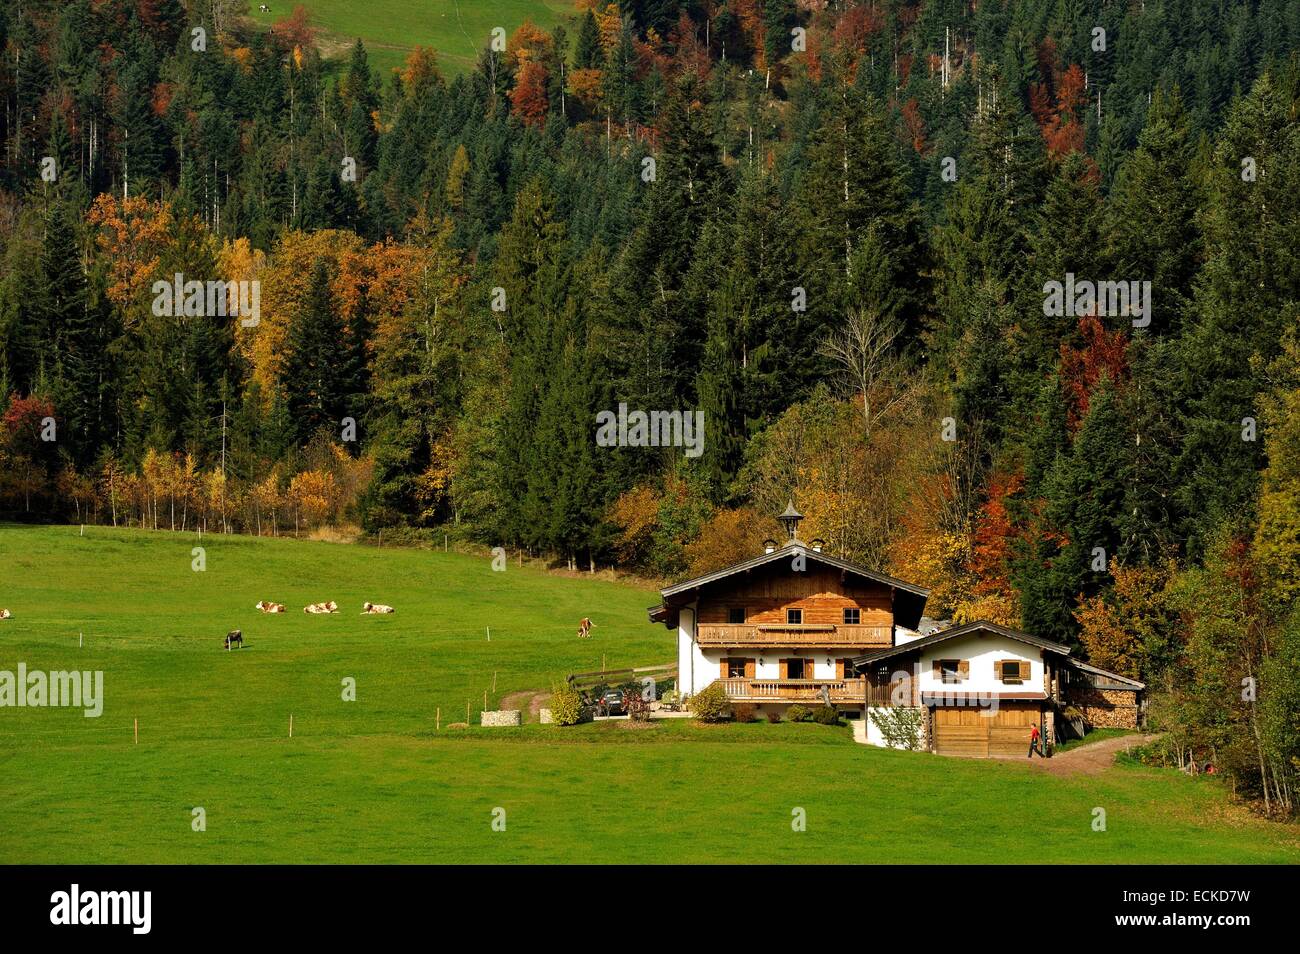 Austria, Tyrol, Alpbach, Alpine scenery and cottage Stock Photo